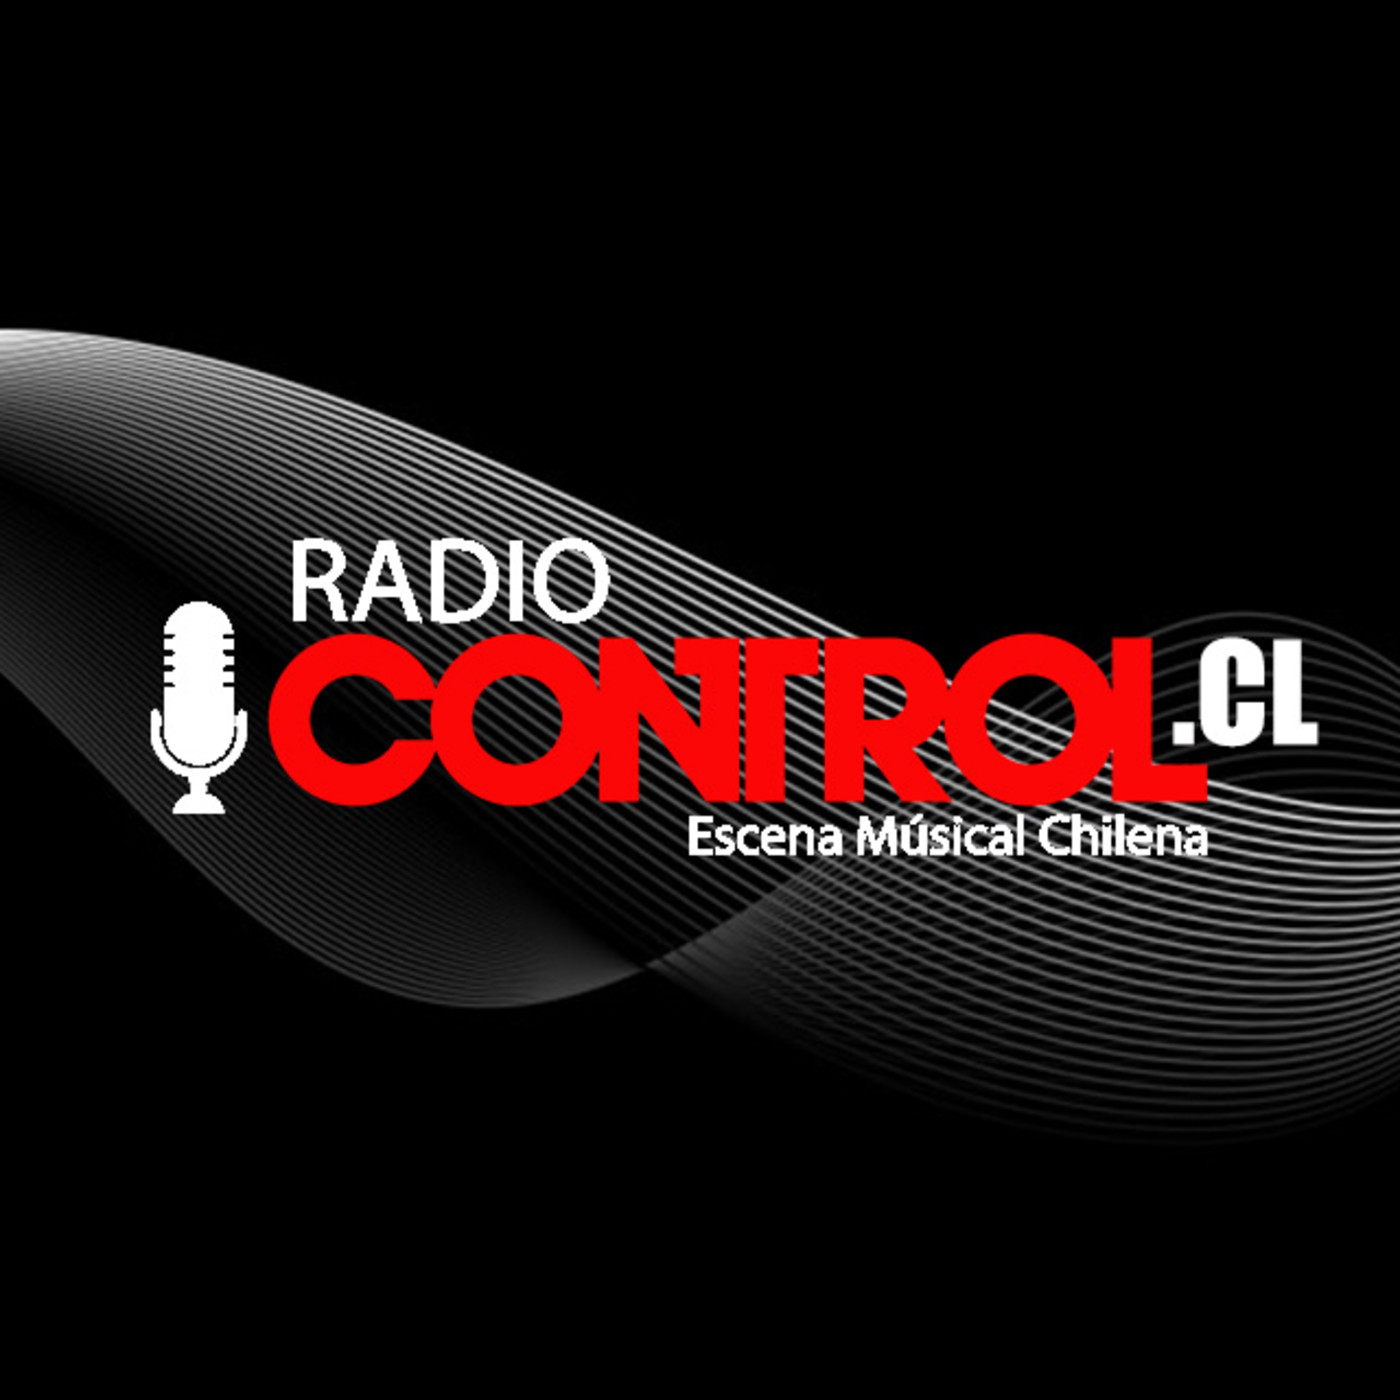 RadioControlCl